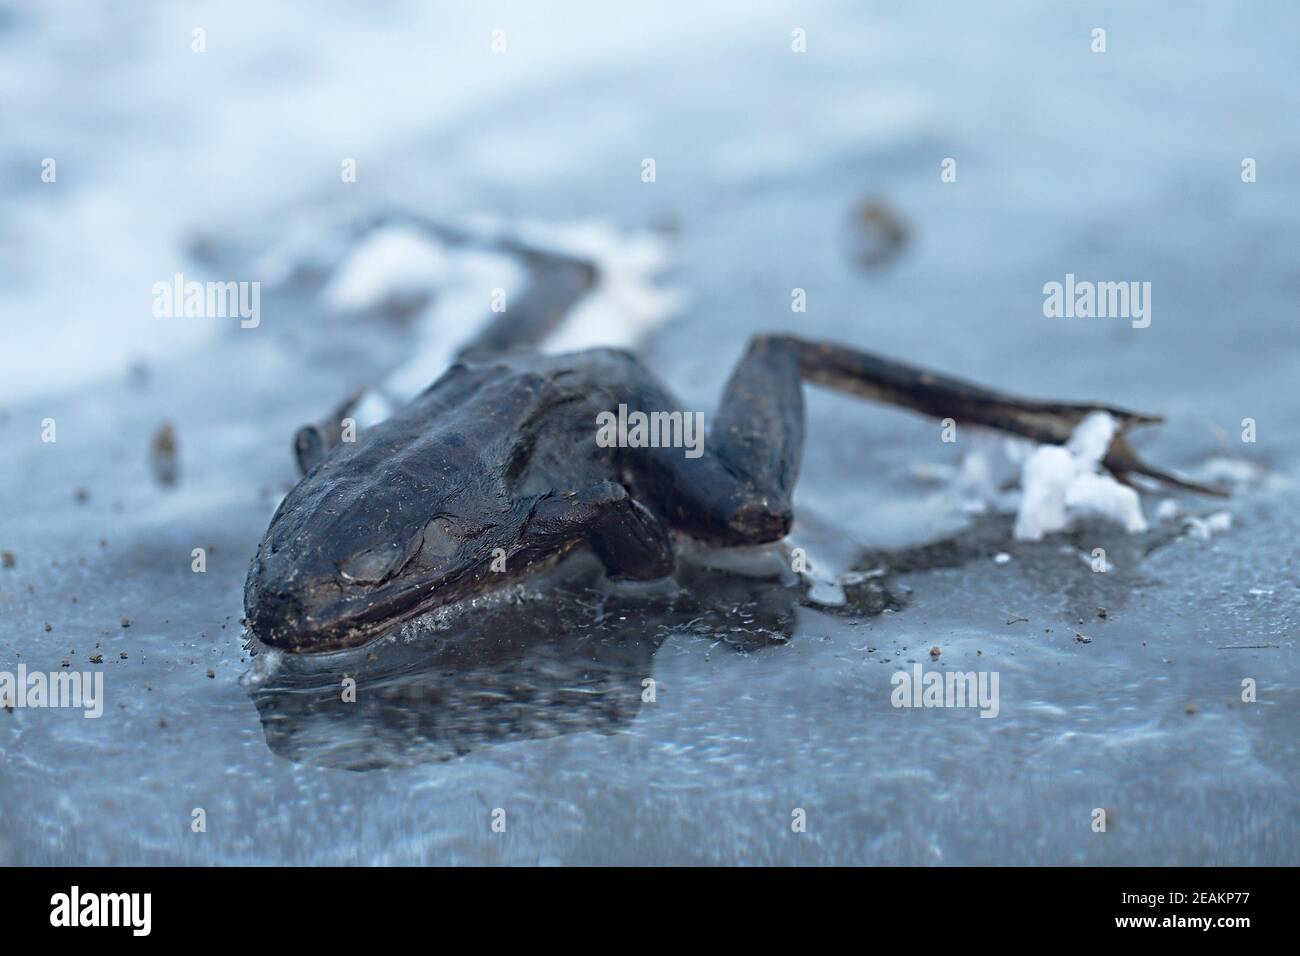 Gefrorenen Frosch auf Eis Stockfotografie - Alamy